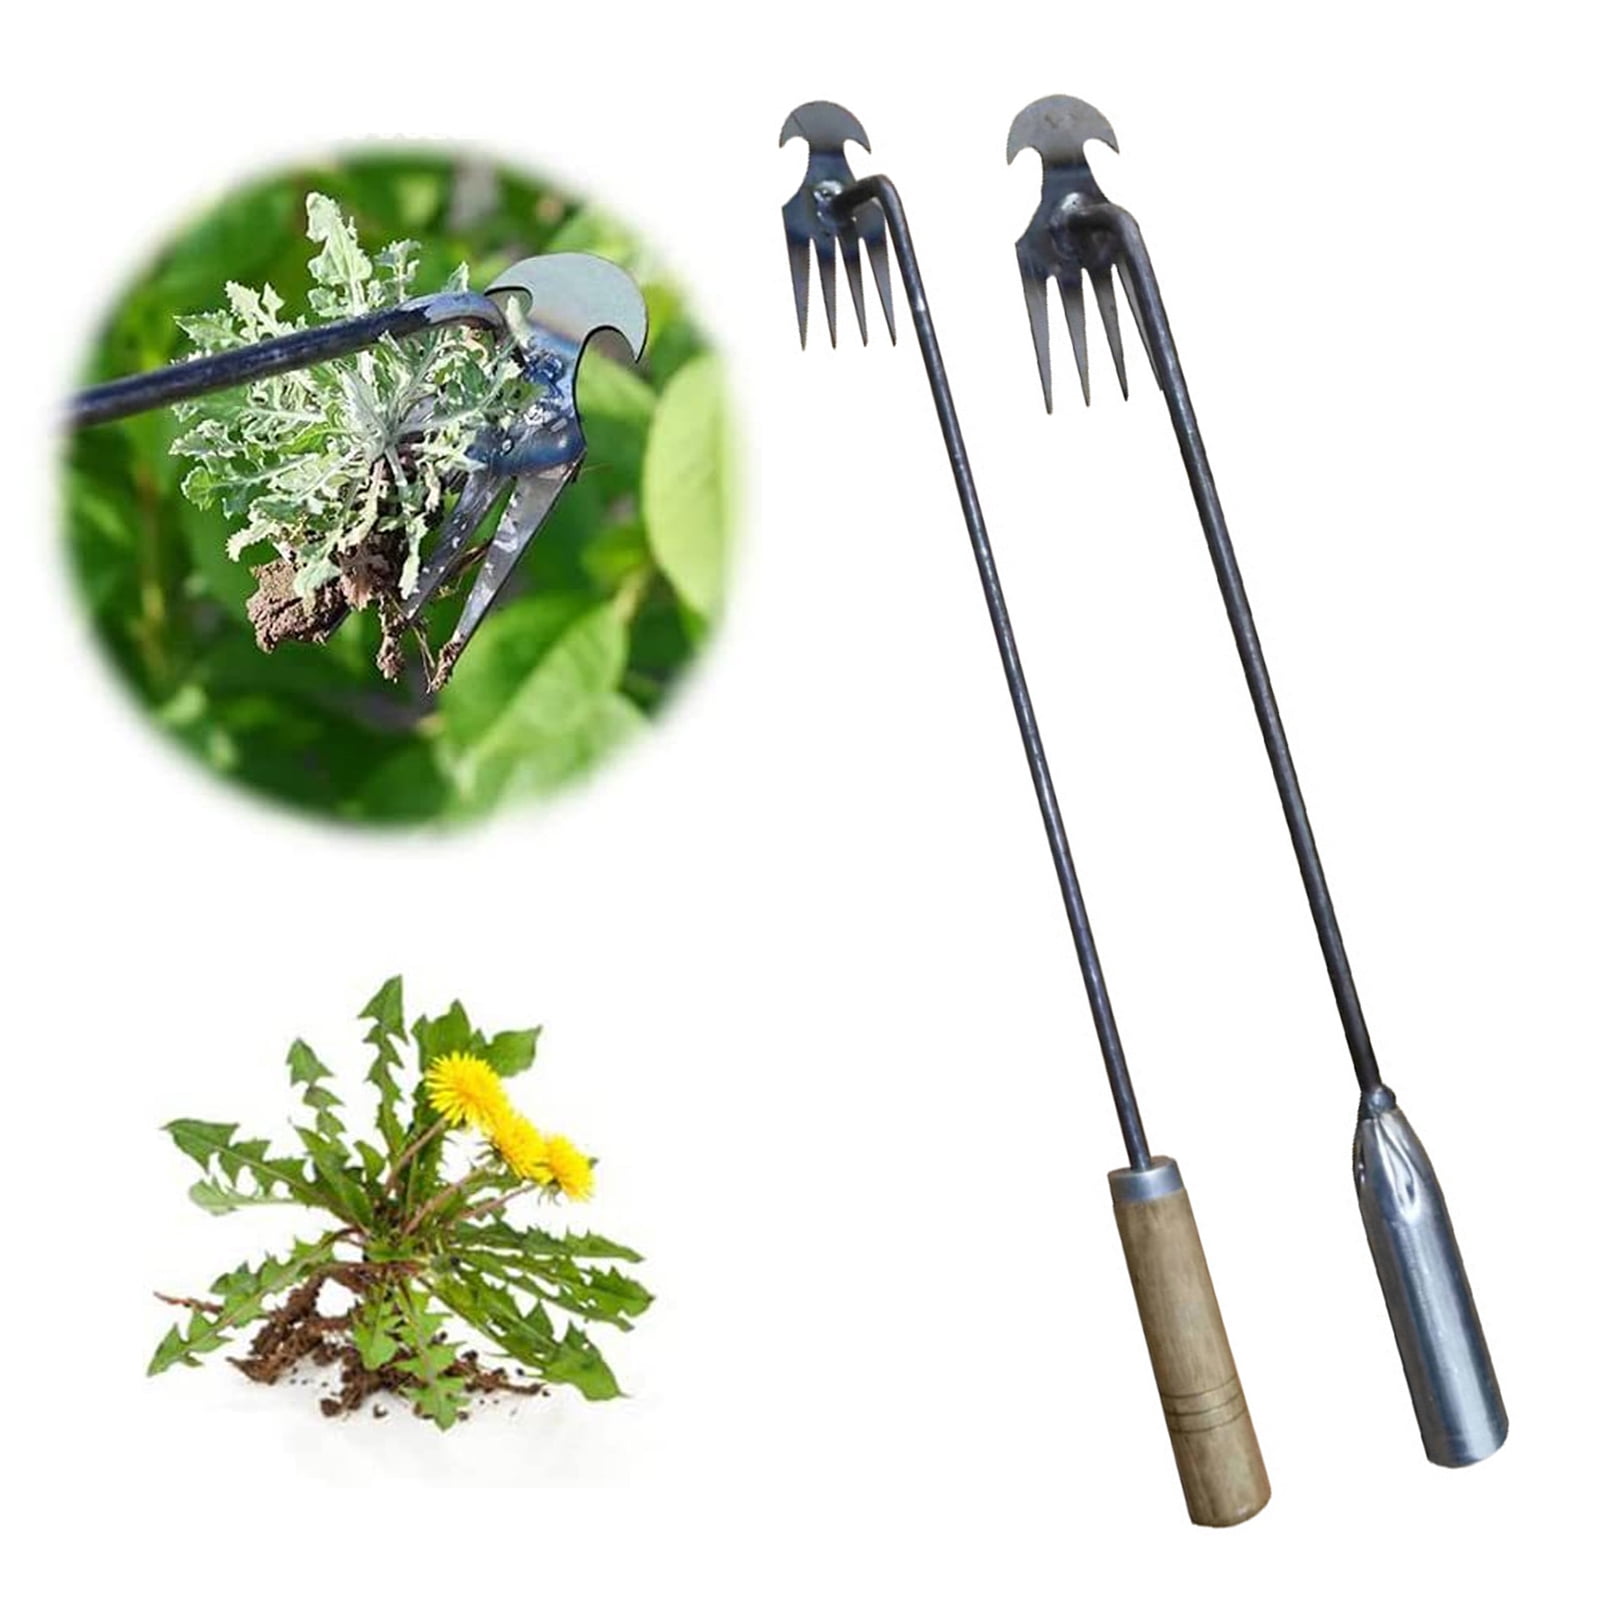 Anvazise Garden Weeding Tool 4-Teeth Long Handle Weed Puller Metal Hand ...